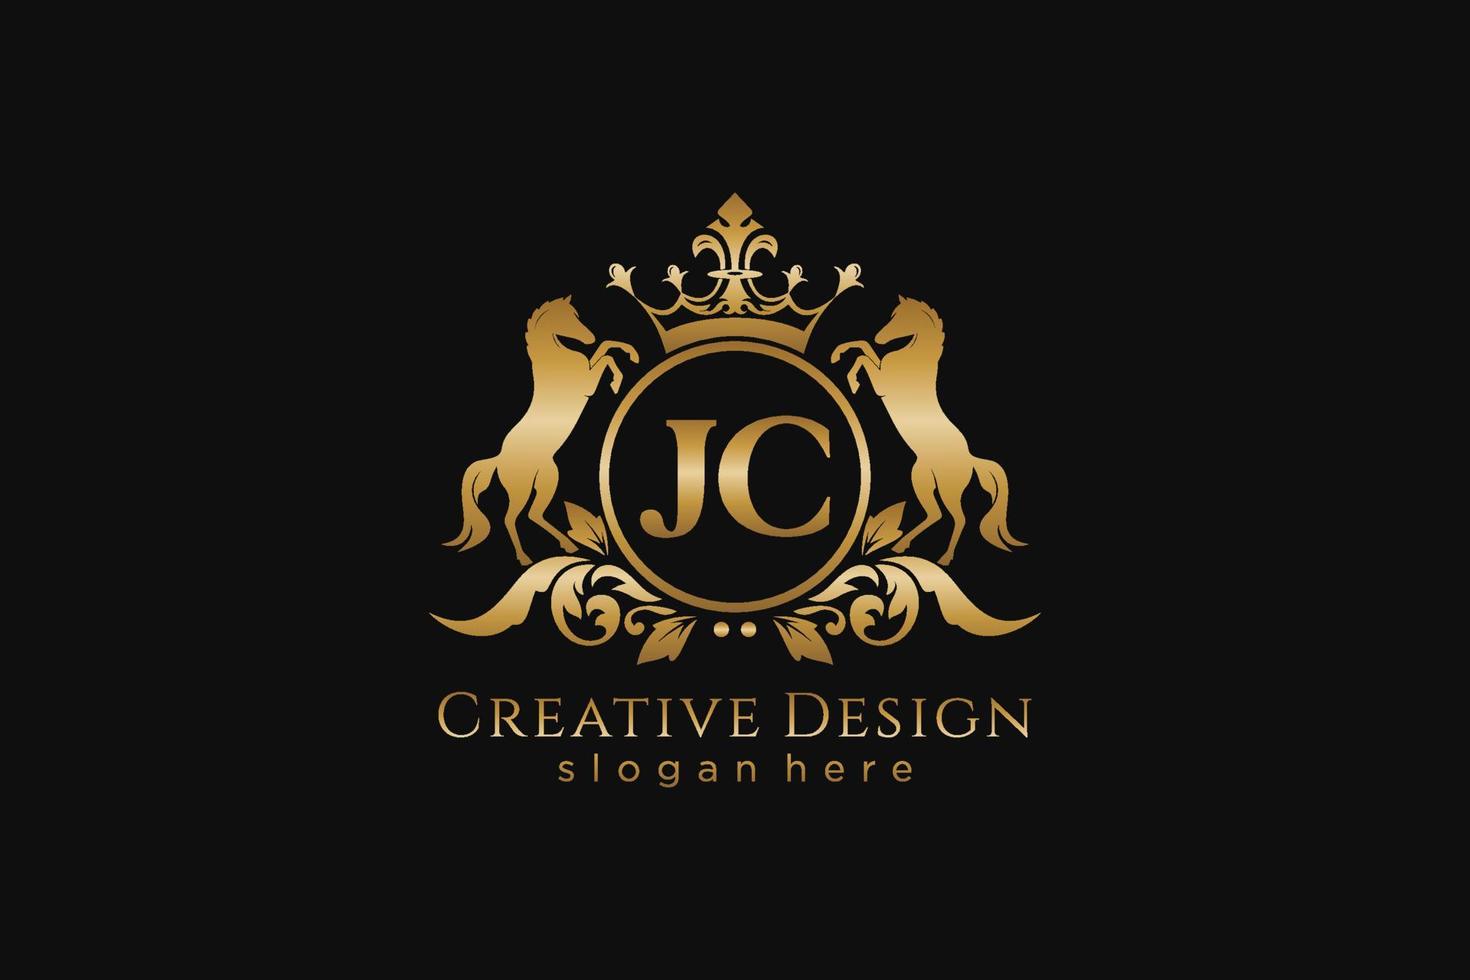 crista dourada retro jc inicial com círculo e dois cavalos, modelo de crachá com pergaminhos e coroa real - perfeito para projetos de marca luxuosos vetor